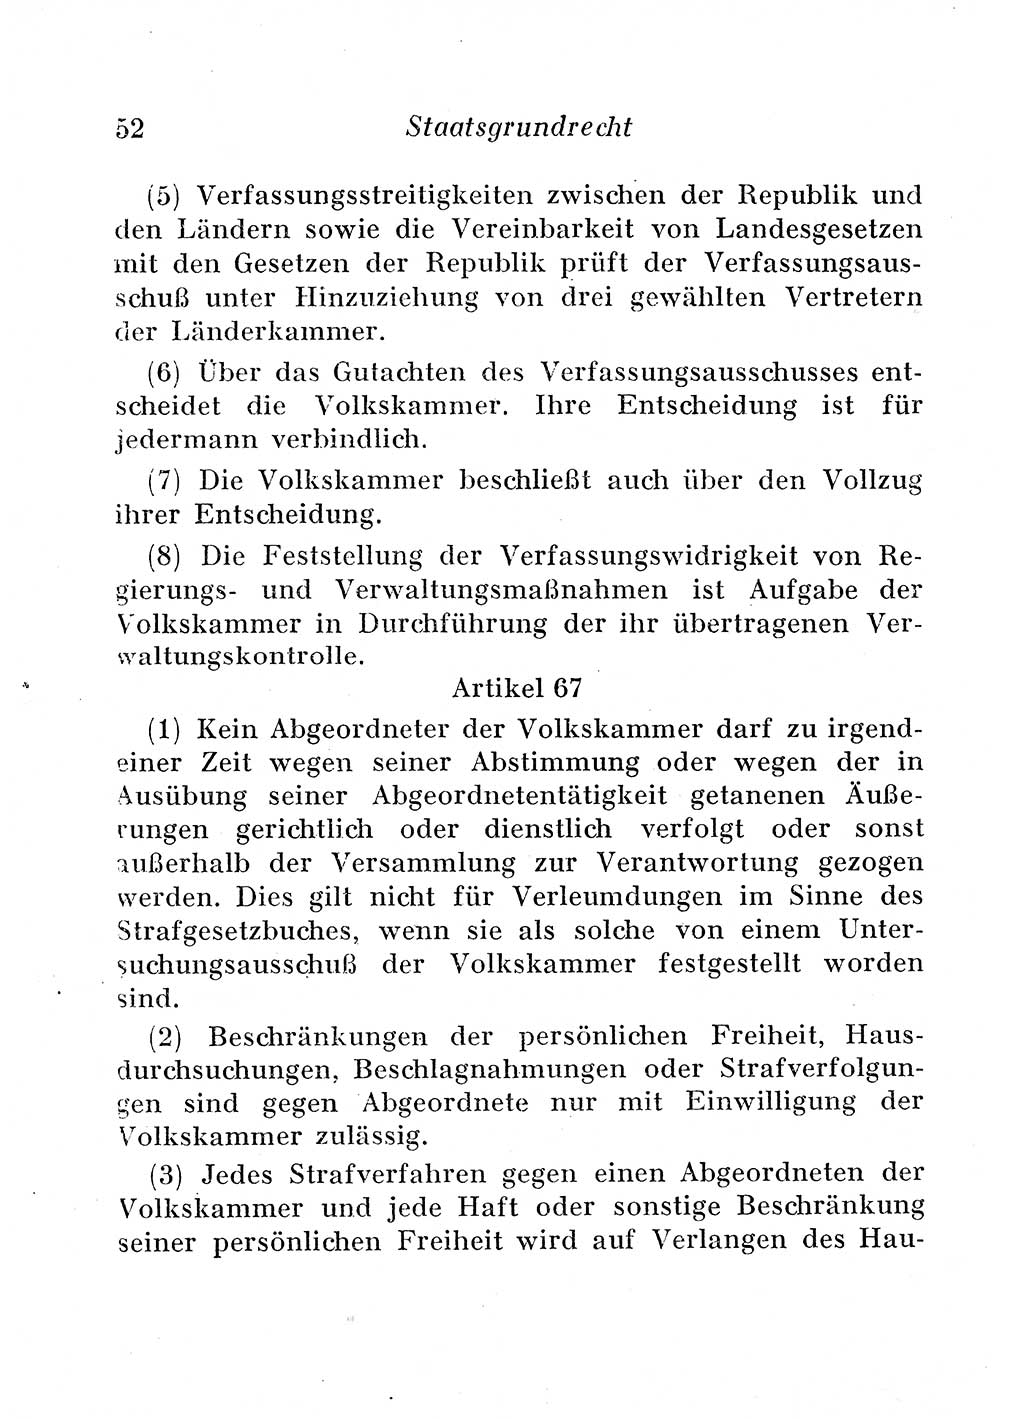 Staats- und verwaltungsrechtliche Gesetze der Deutschen Demokratischen Republik (DDR) 1958, Seite 52 (StVerwR Ges. DDR 1958, S. 52)